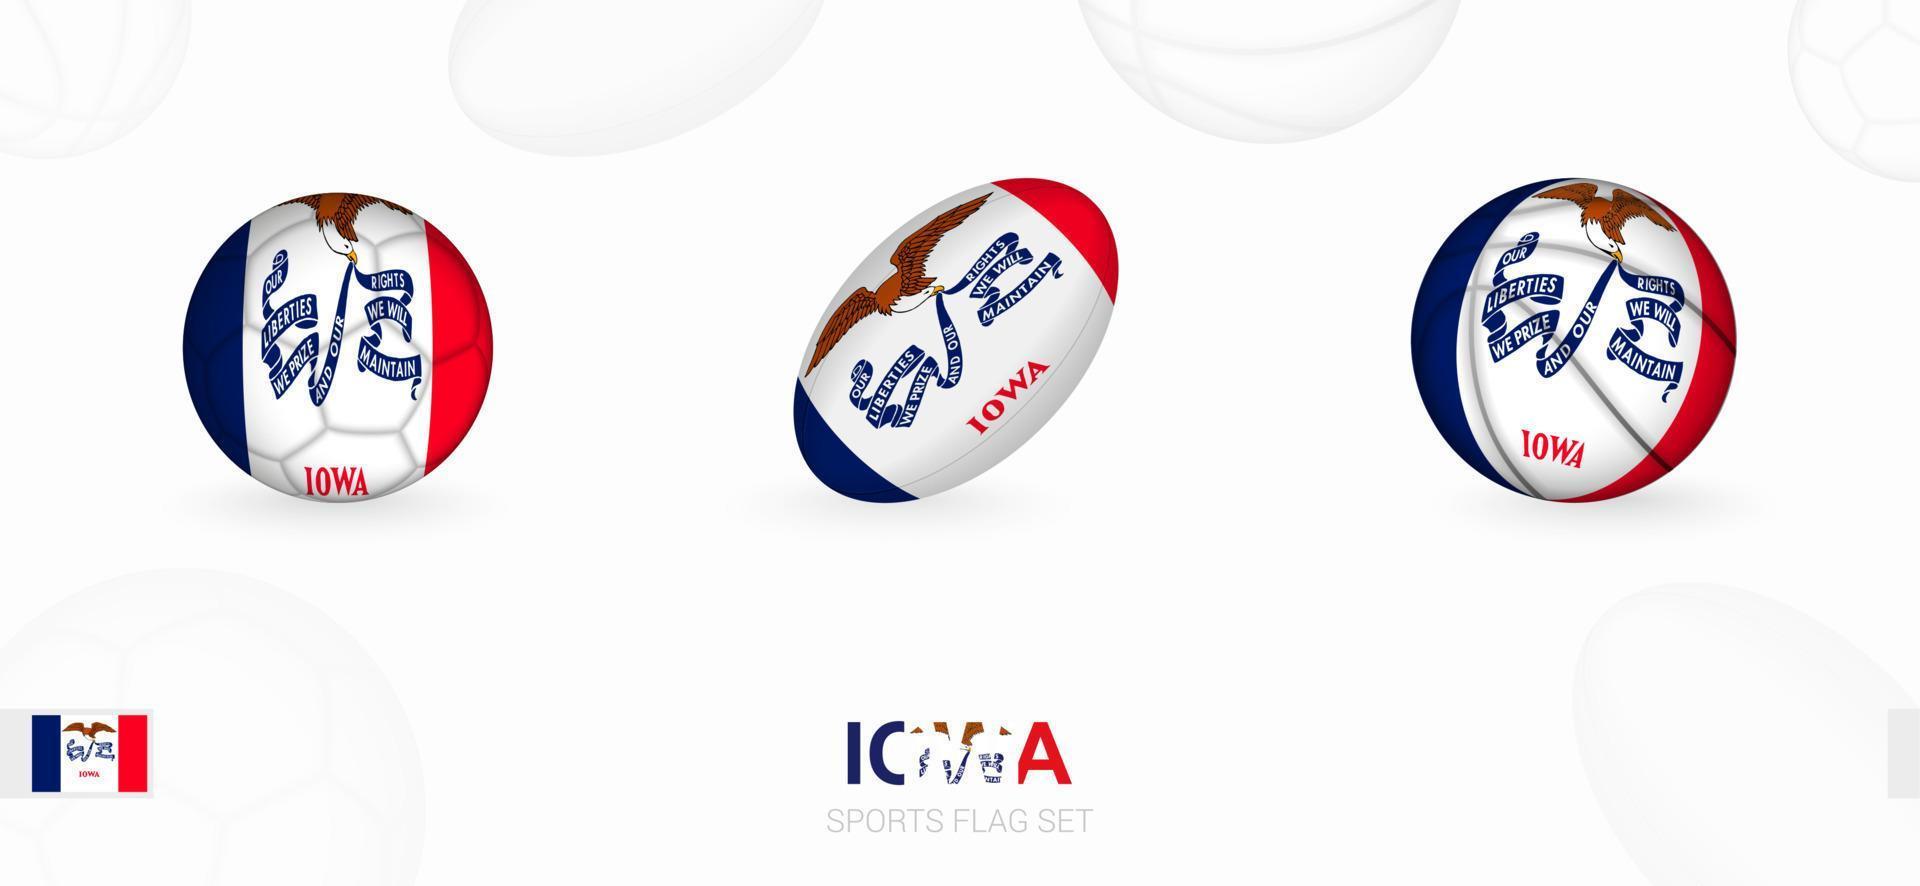 Deportes íconos para fútbol, rugby y baloncesto con el bandera de Iowa. vector